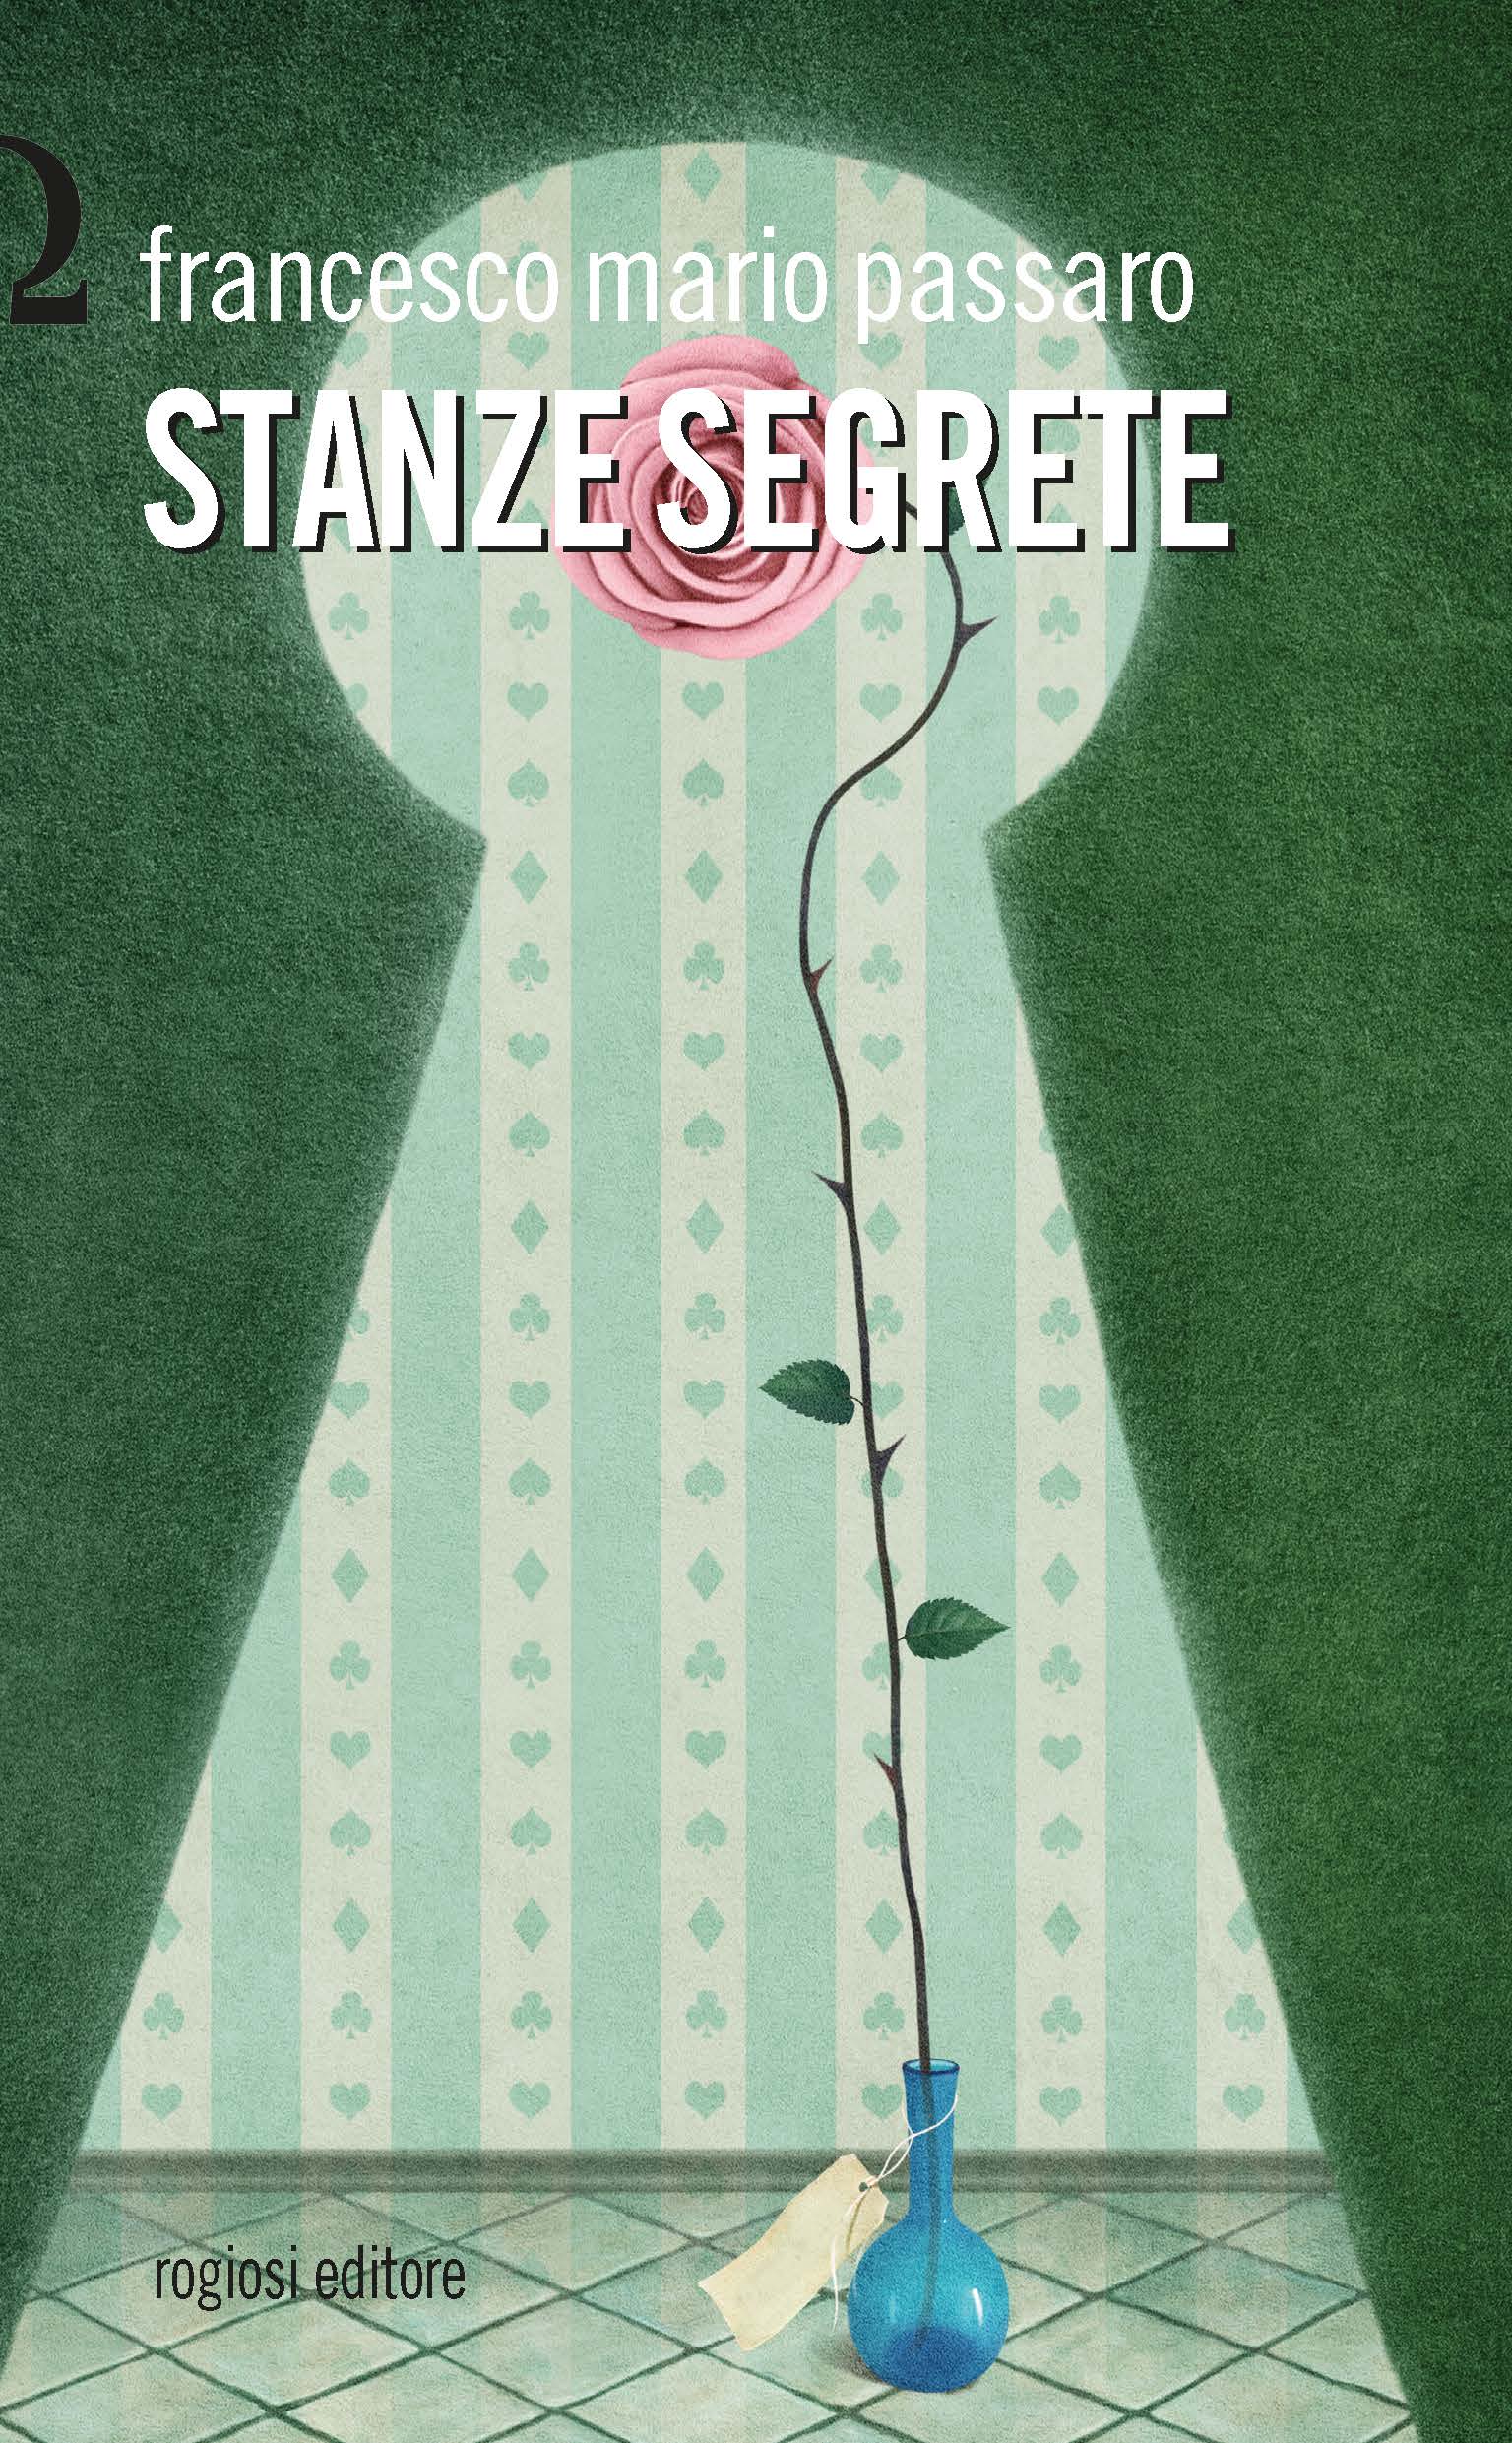  Portici, alla Mondadori di Viale Melina presentazione del libro  Stanze segrete, di Francesco Mario Passaro